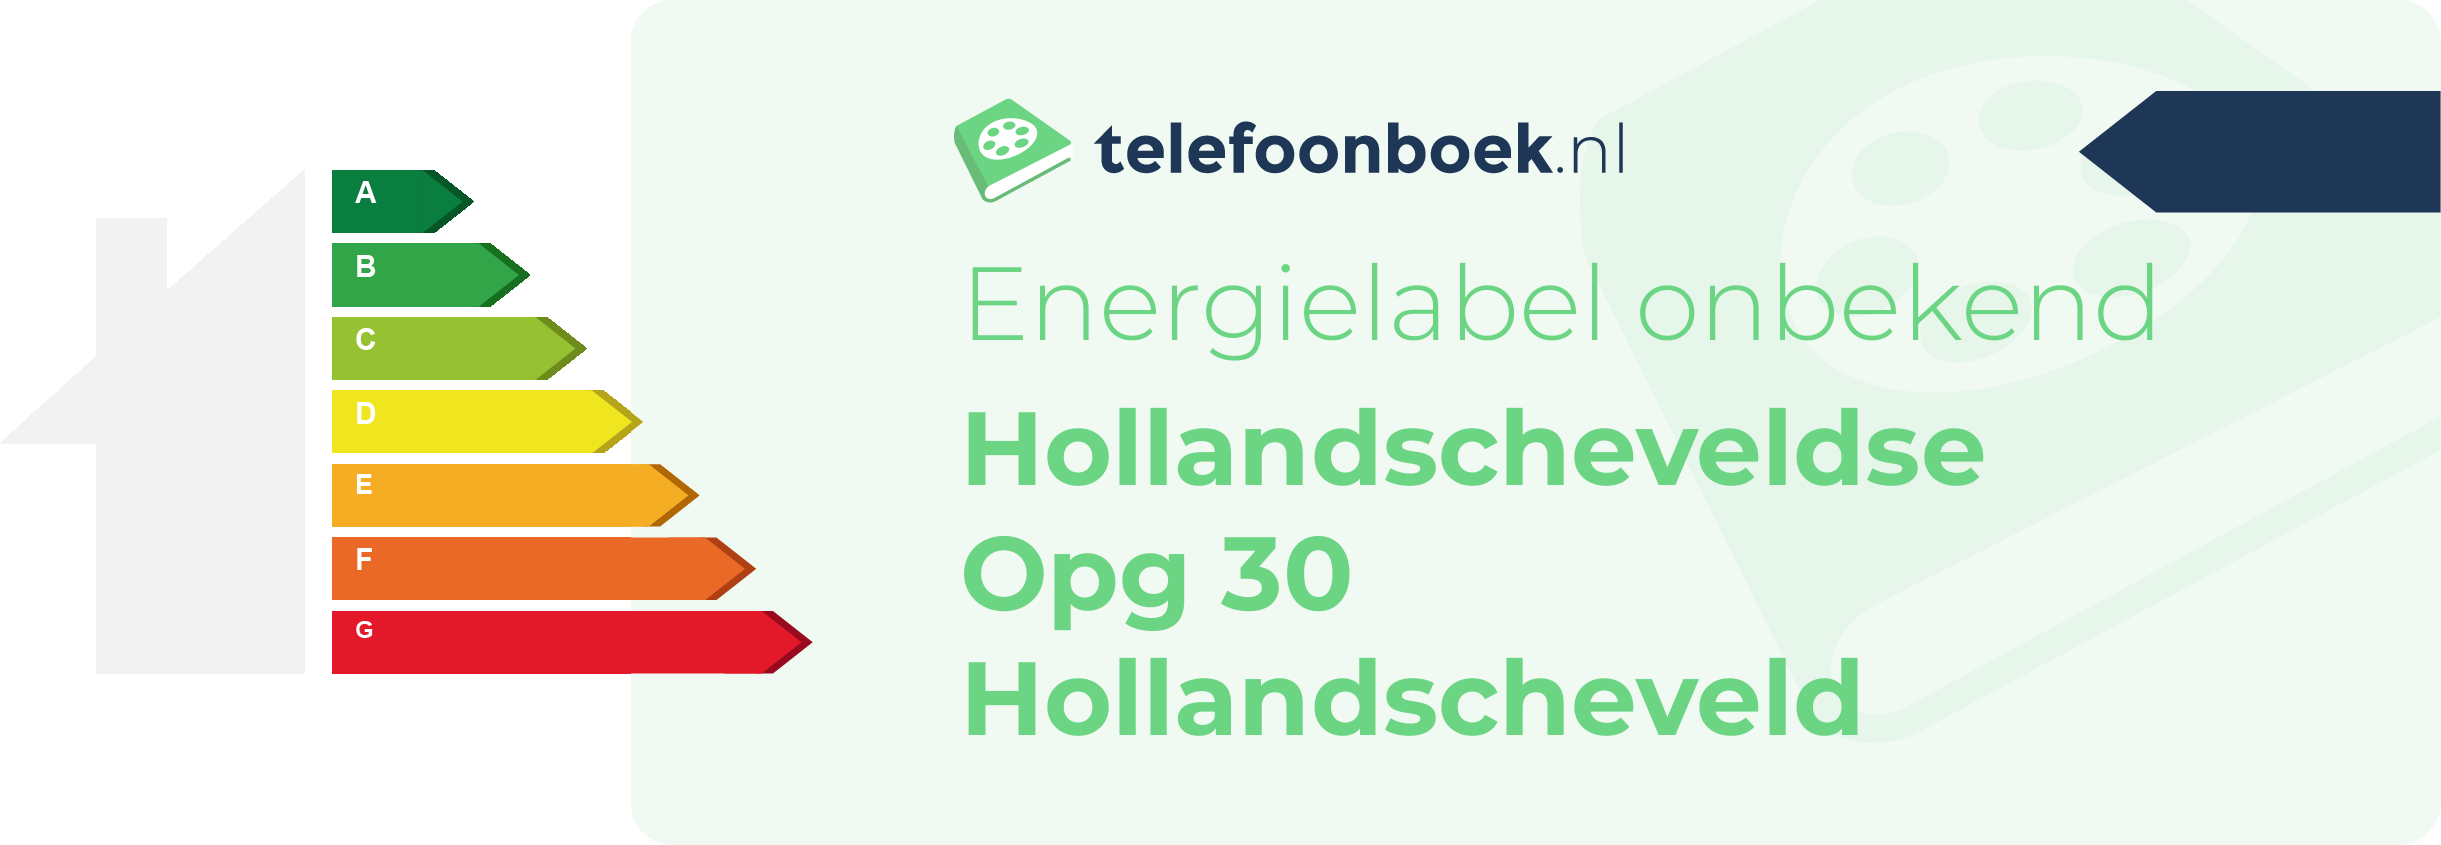 Energielabel Hollandscheveldse Opg 30 Hollandscheveld